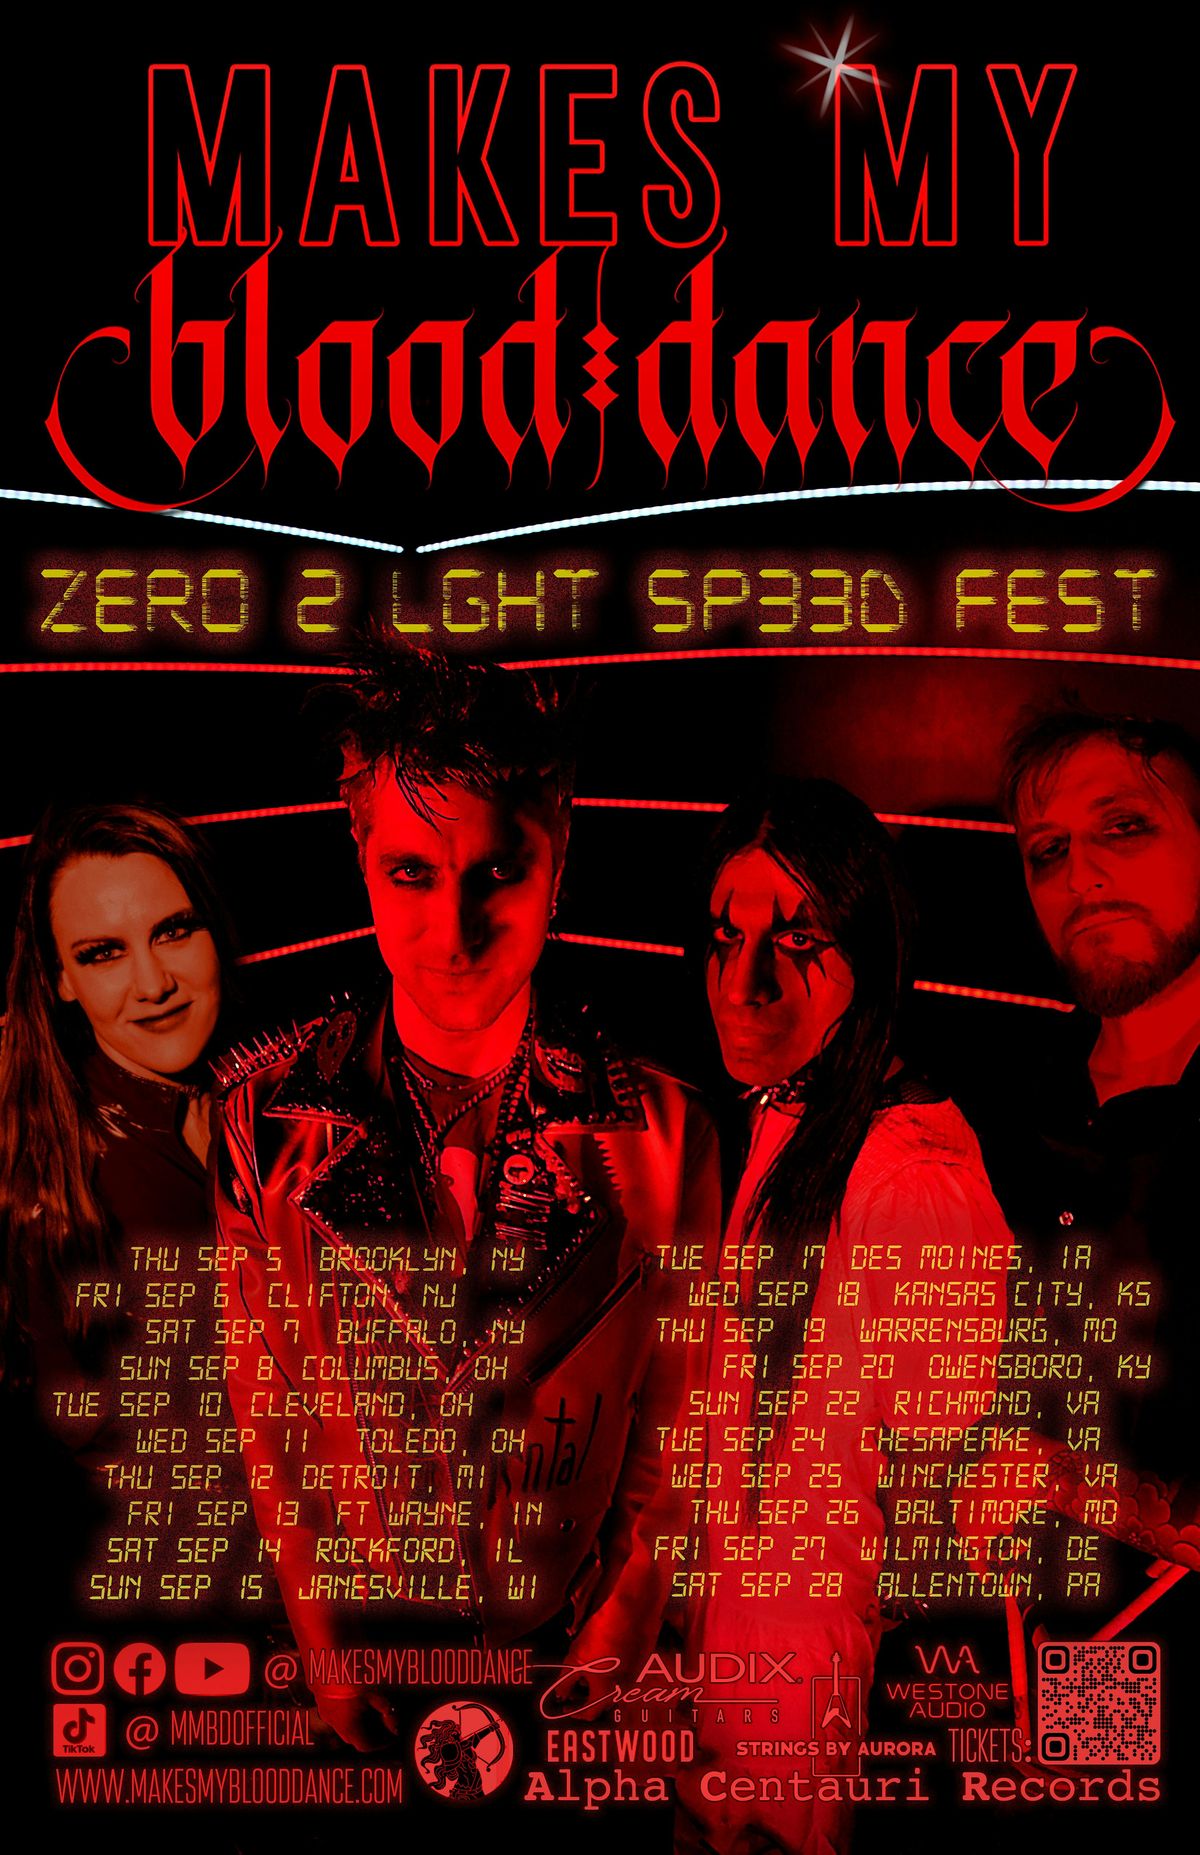 Sep 10 - Buzzbin, Akron, OH - Makes My Blood Dance ZER0 2 LGHT SP33D Fest